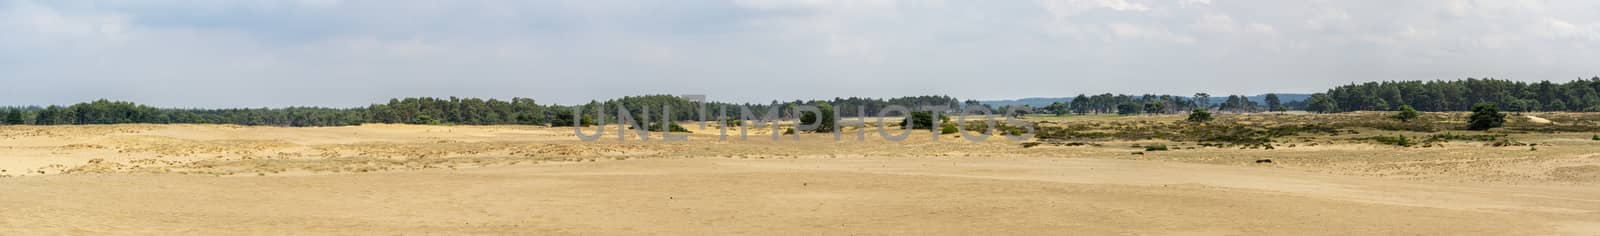 Panorama of the sand dunes at National Park Hoge Veluwe, Gelderland, Arnhem, Netherlands by kb79